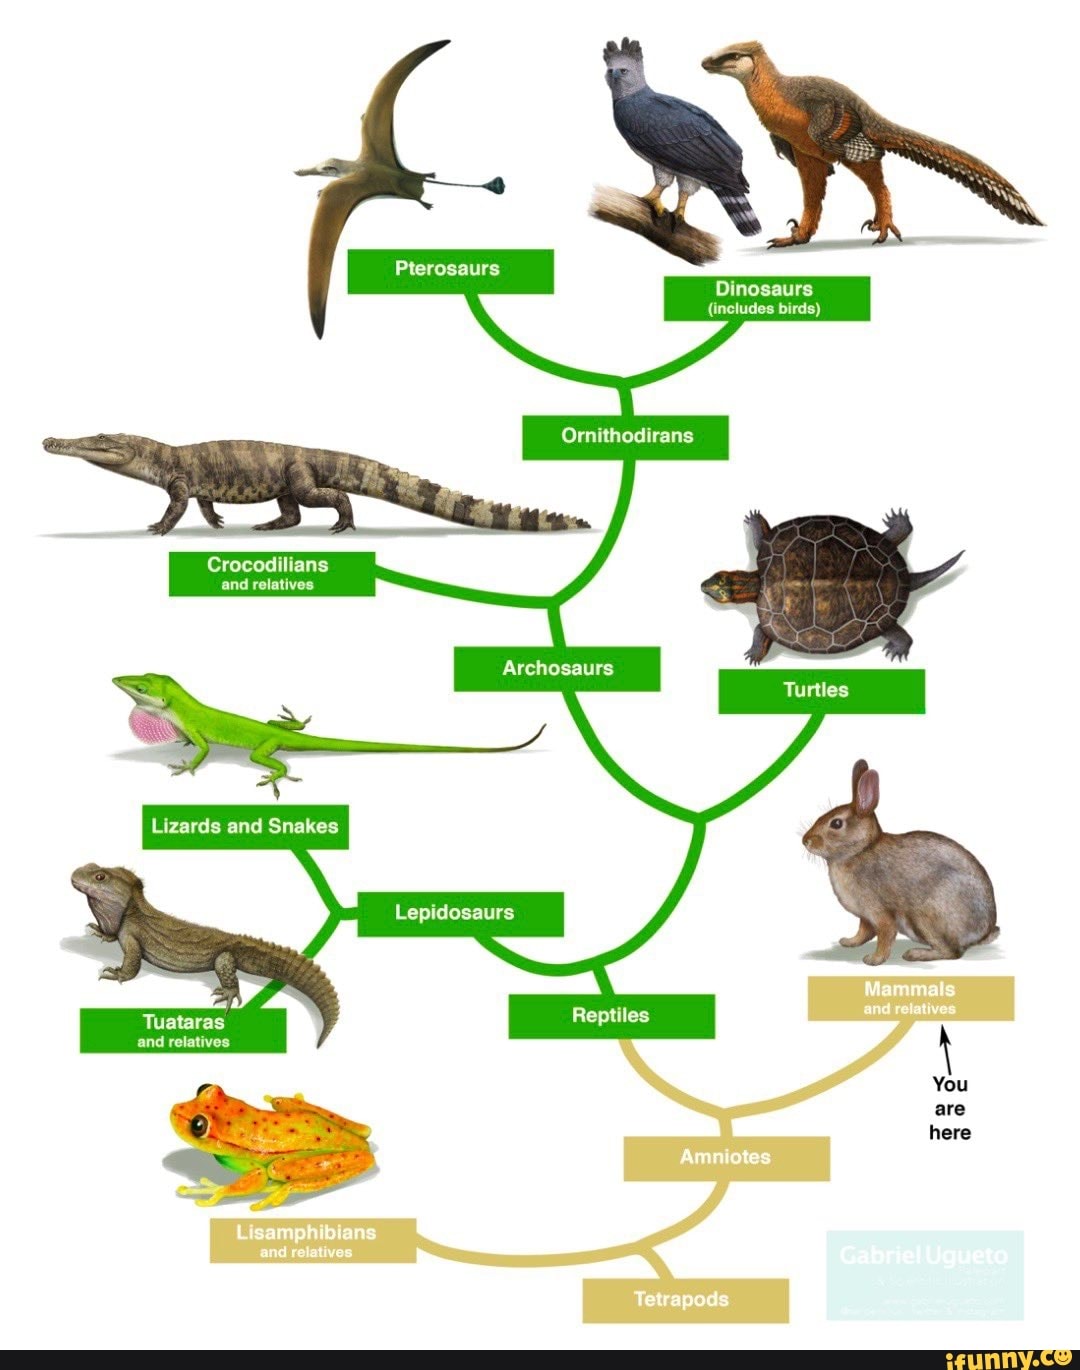 Динозавры развитие. Филогенетическое Древо рептилий. Эволюционное Древо рептилий. Эволюционное Древо архозавров. Схема систематика пресмыкающихся.